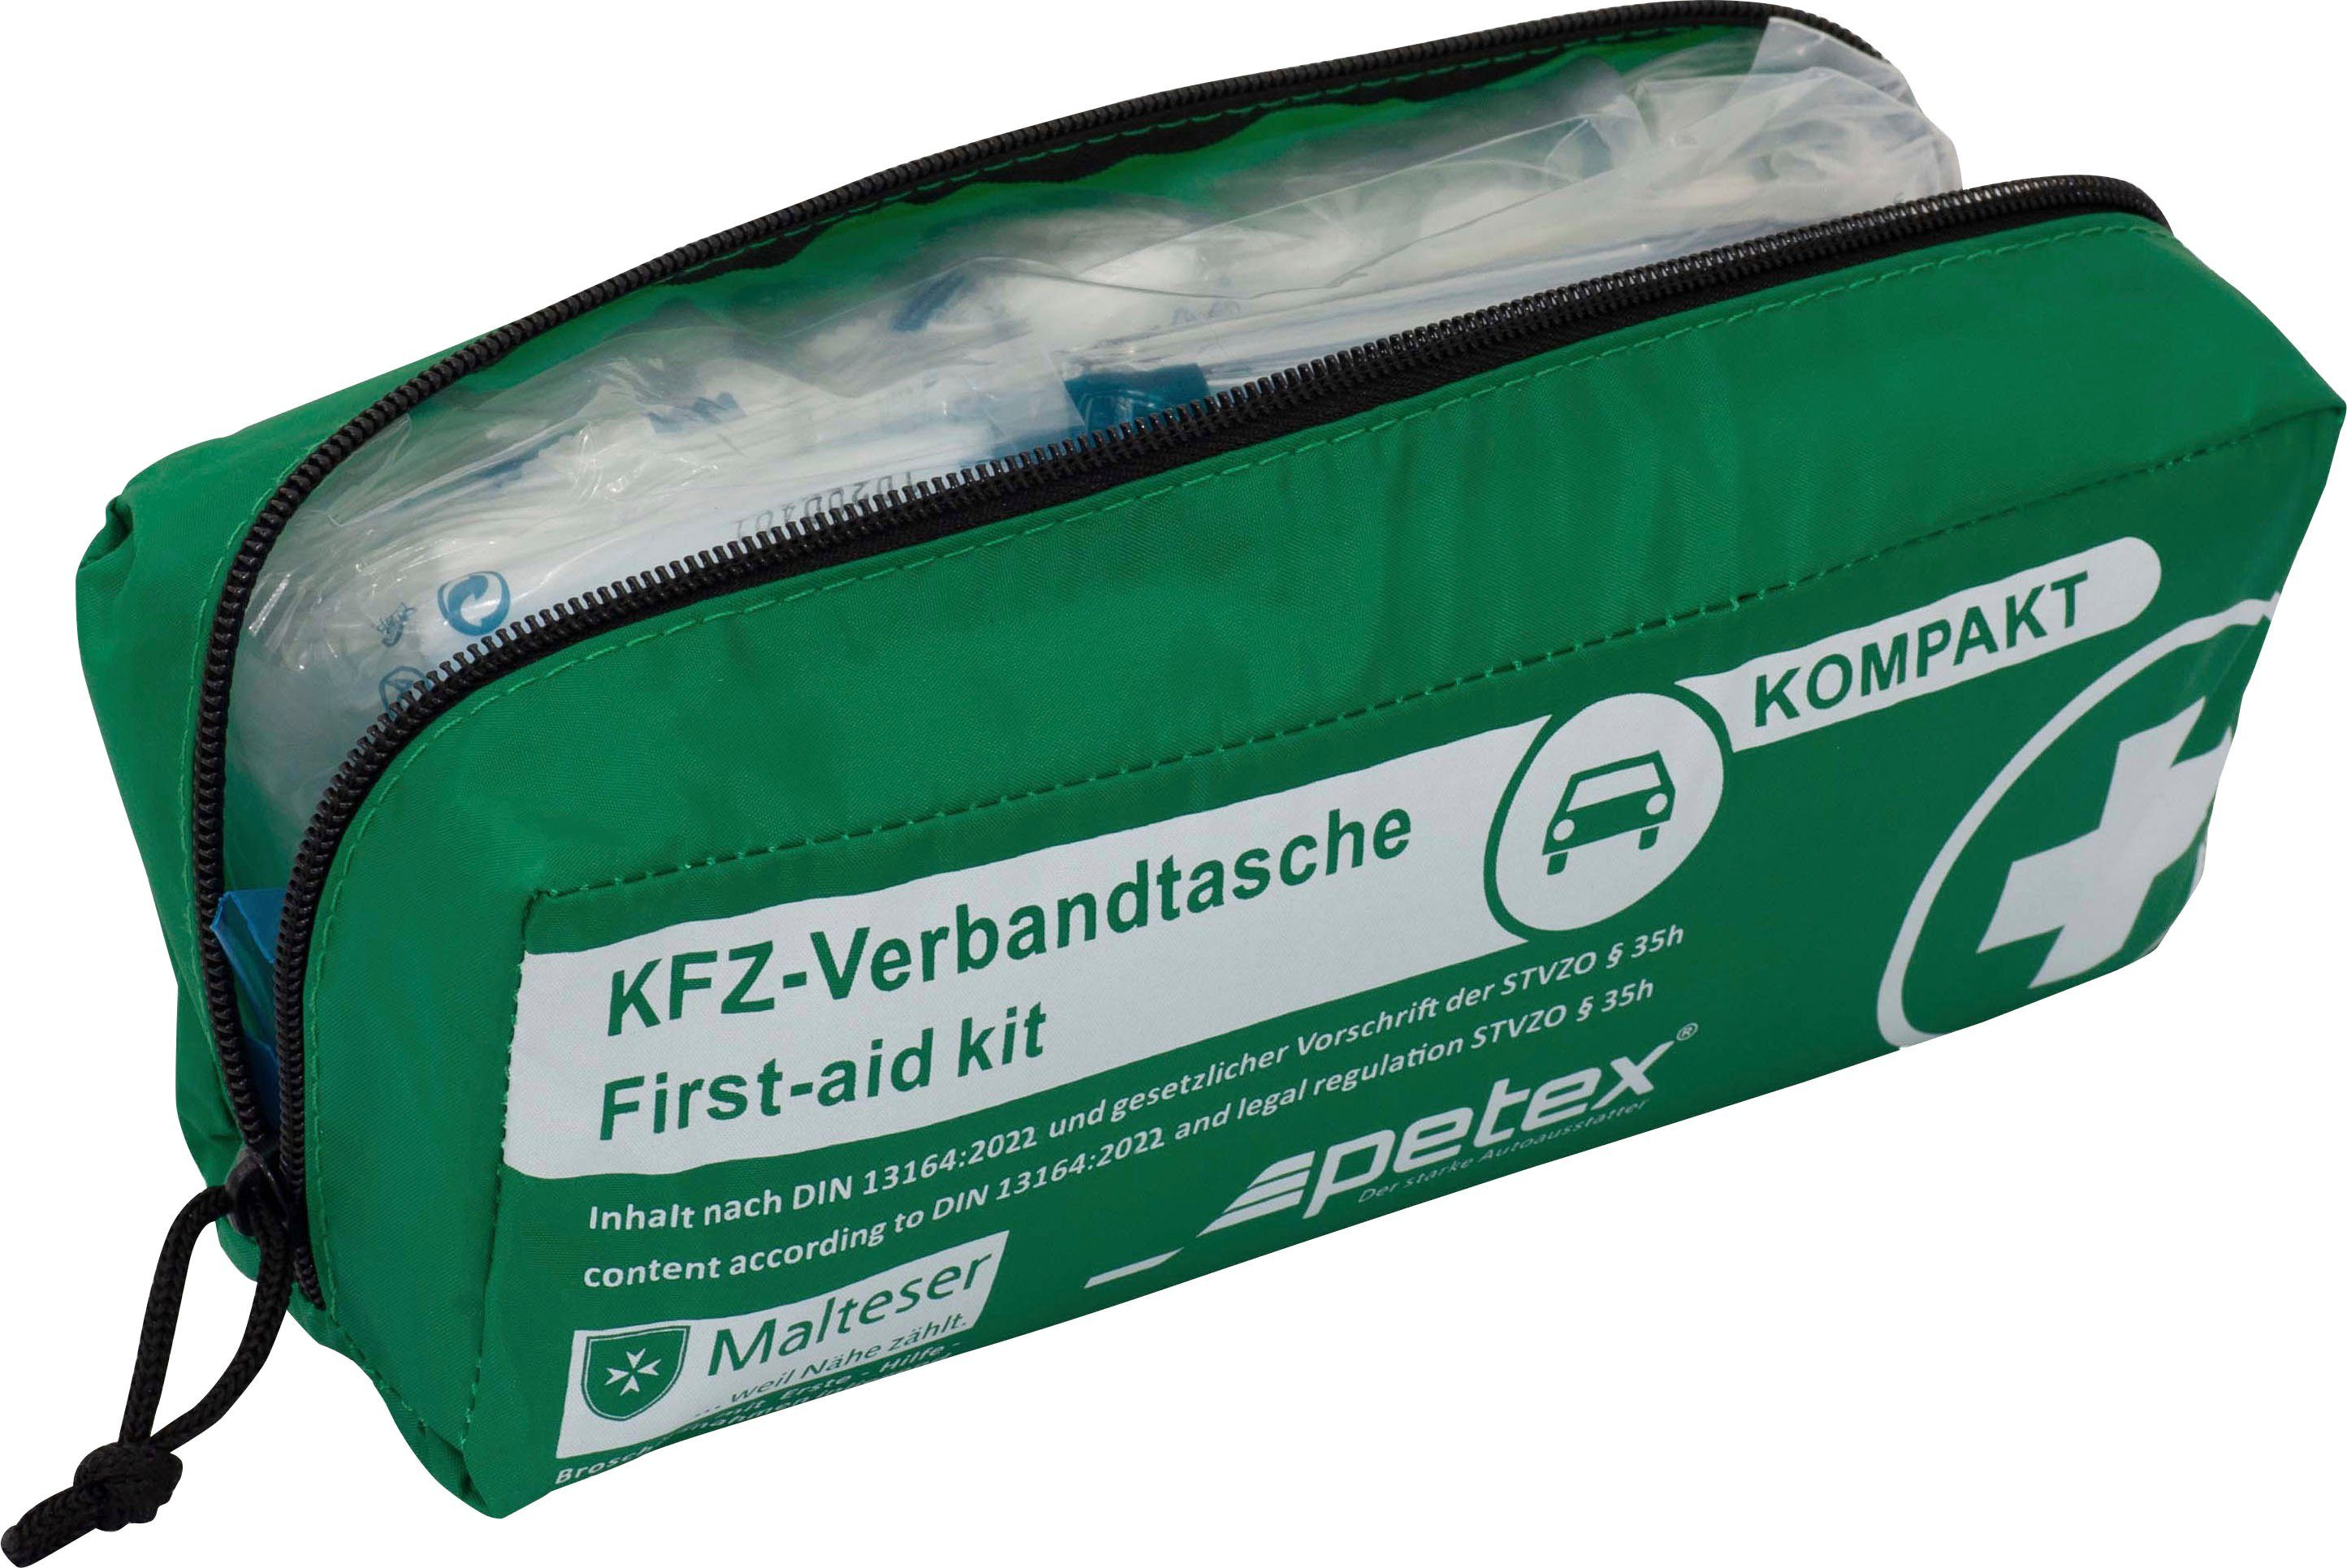 Petex KFZ-Verbandtasche Kompakt, mit Inhalt nach DIN 13164:2022